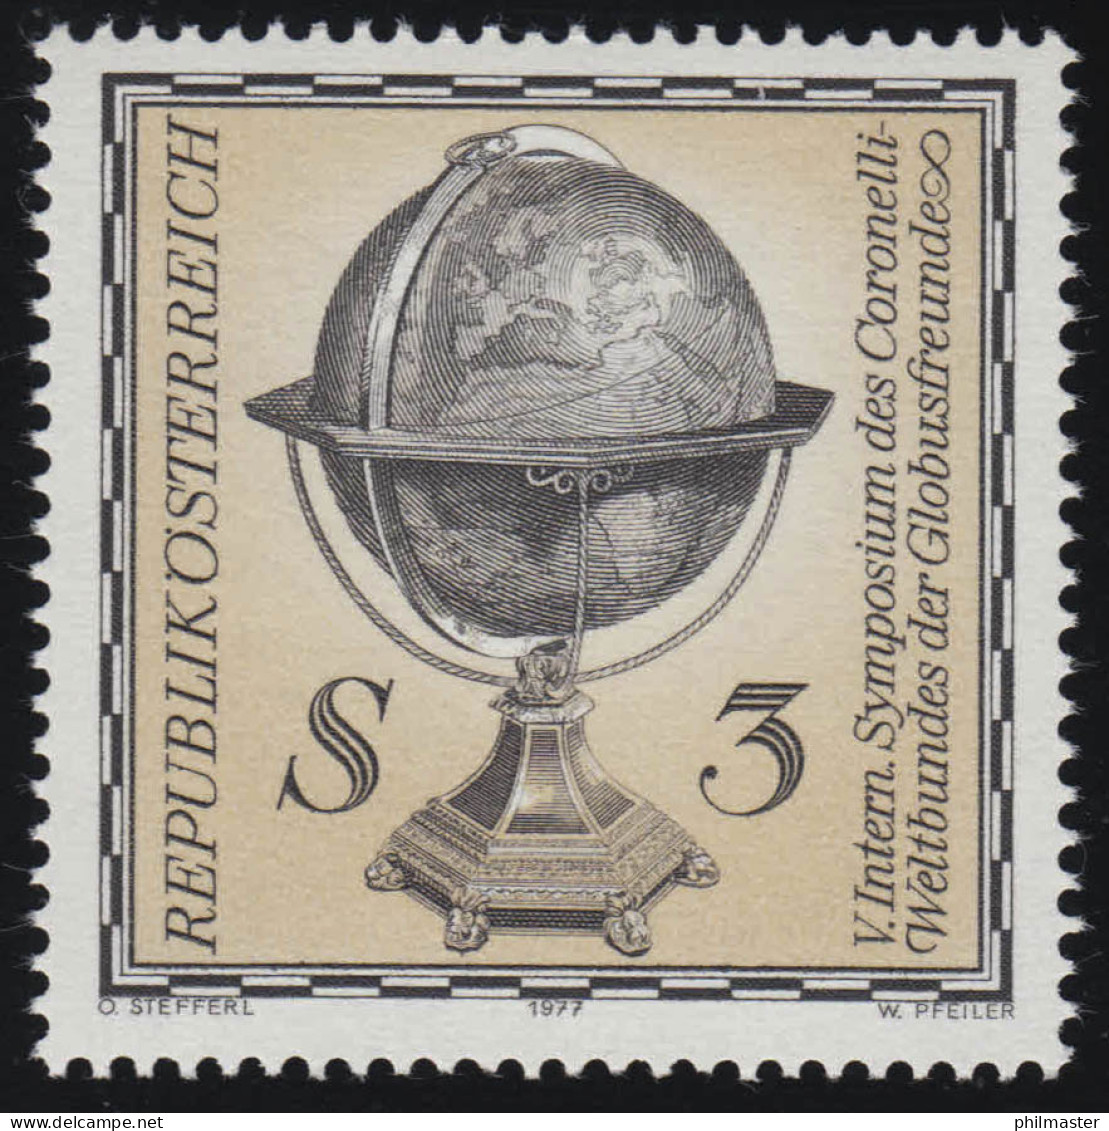 1554 Internationales Symposium Coronelli Weltbund, Erdglobus, 3 S, Postfrisch ** - Neufs